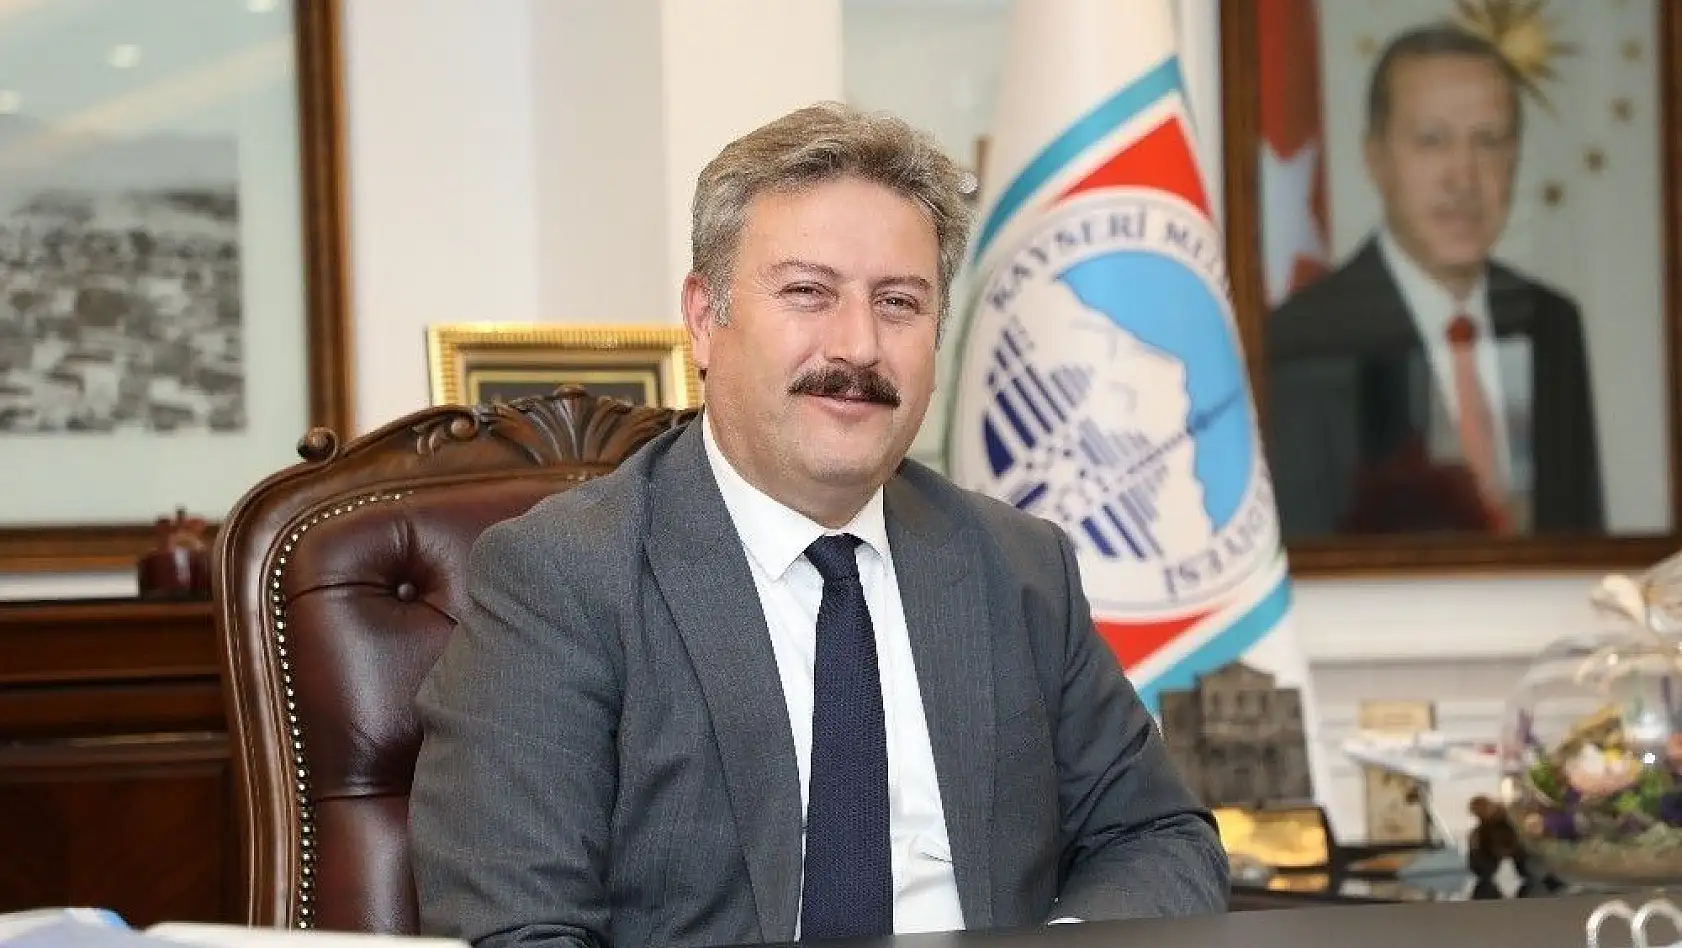 Başkan Palancıoğlu: 'Sizin vergilerinizle alınıyor. Kamu mallarını koruyup, kollayınız'
